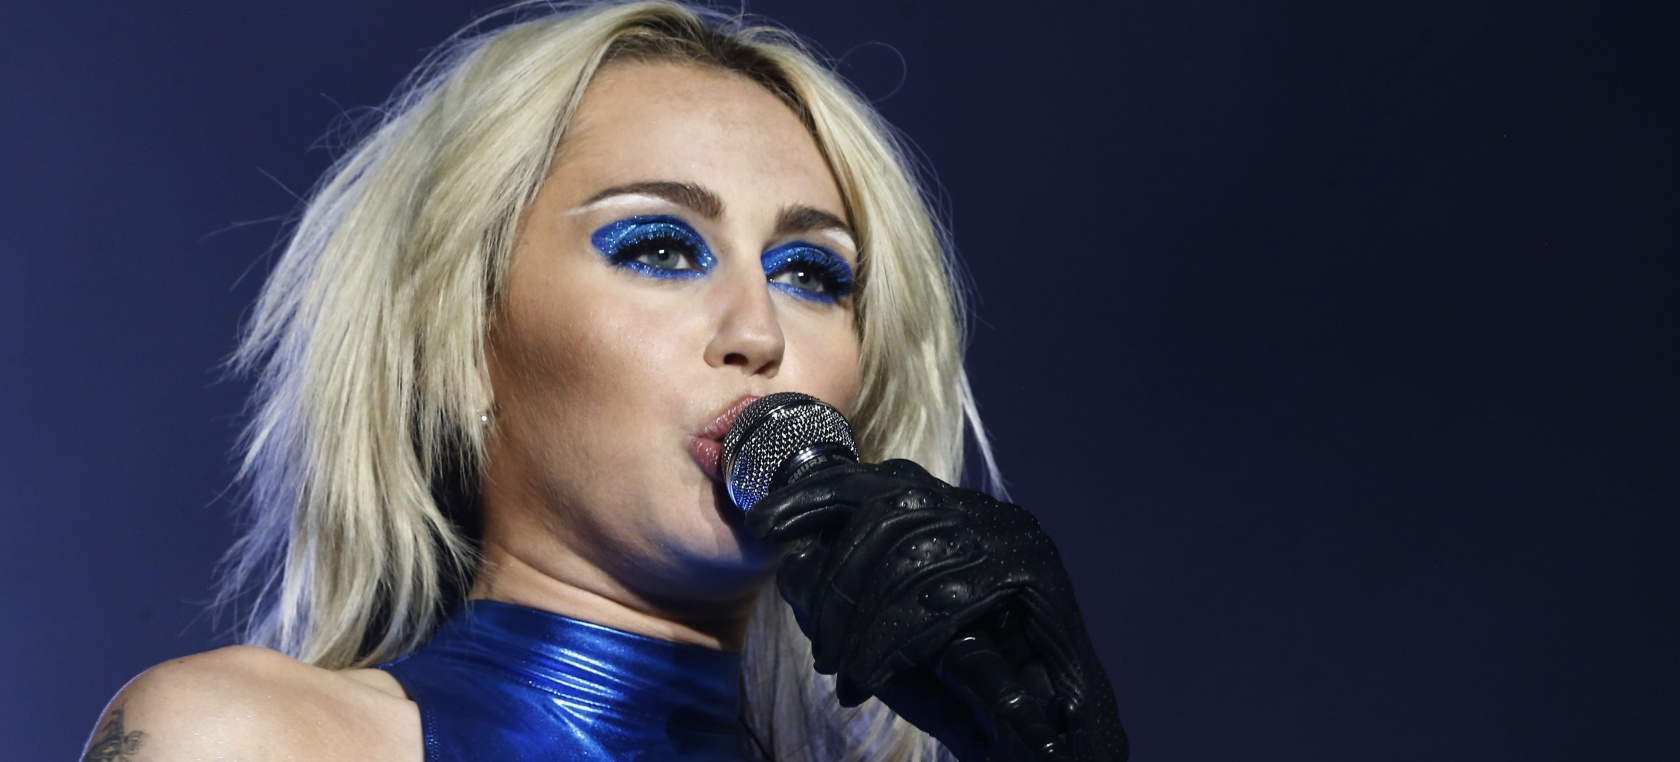 La cantante y actriz Miley Cyrus volaba hacia Paraguay cuando un rayo impactó el avión.